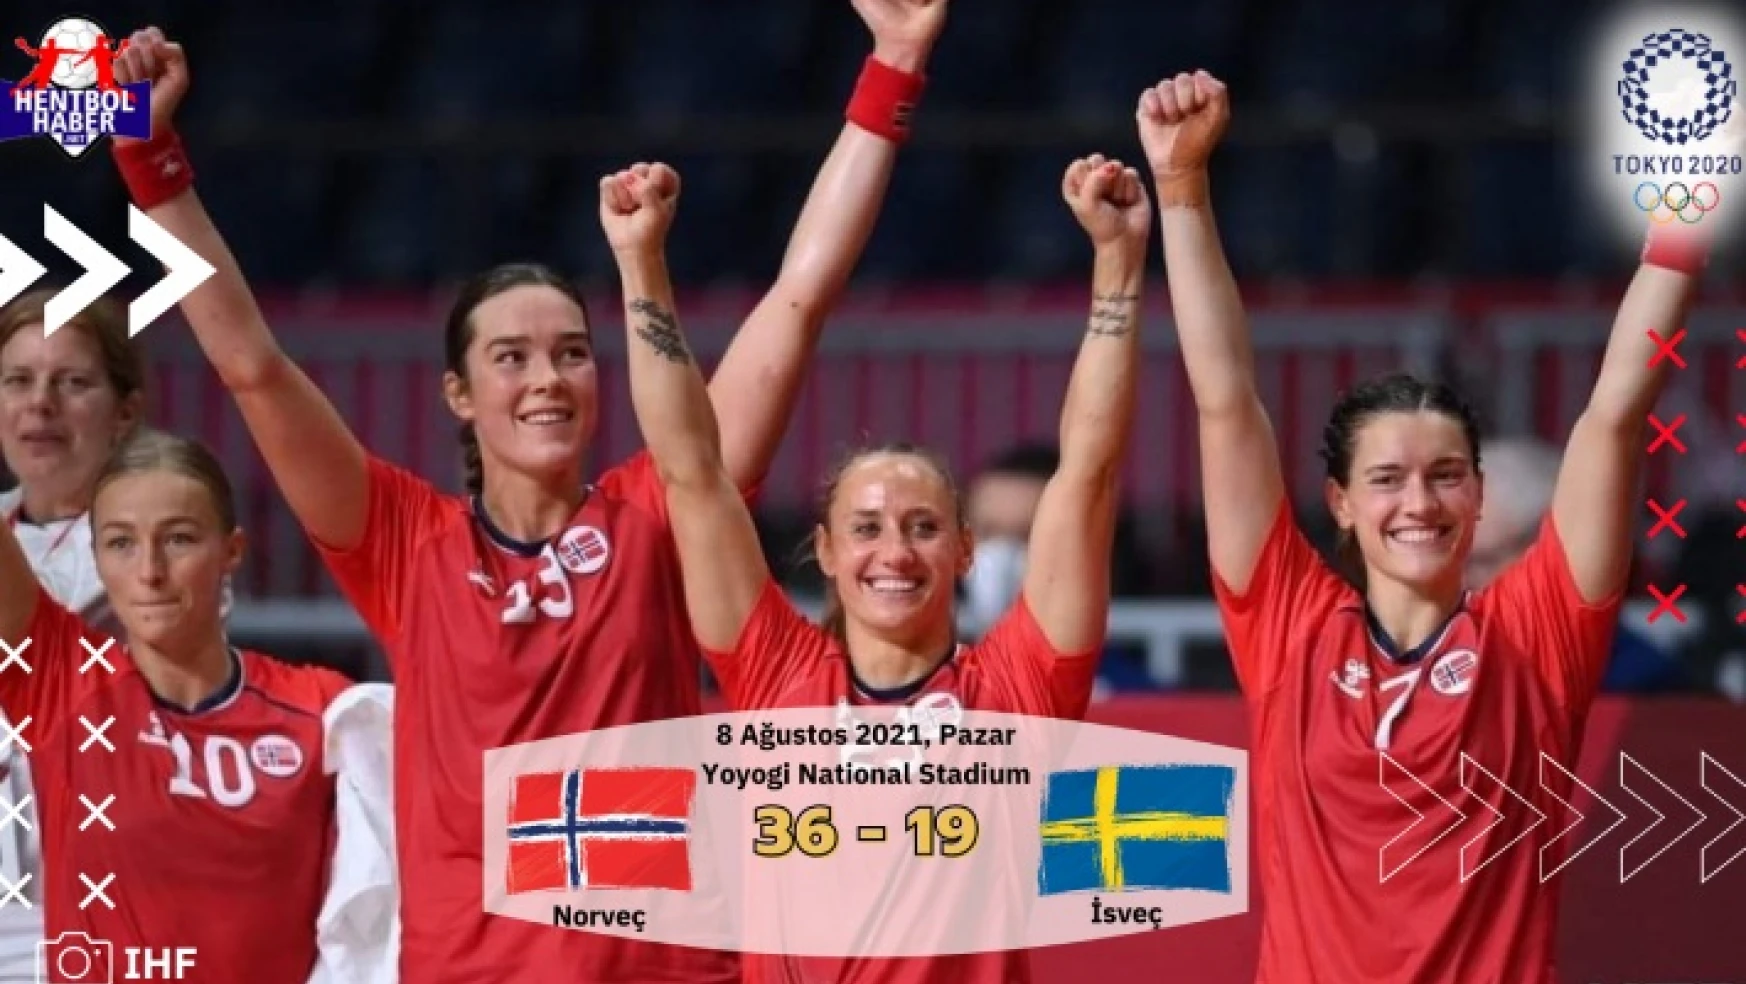 Norveç – İsveç: 36-19